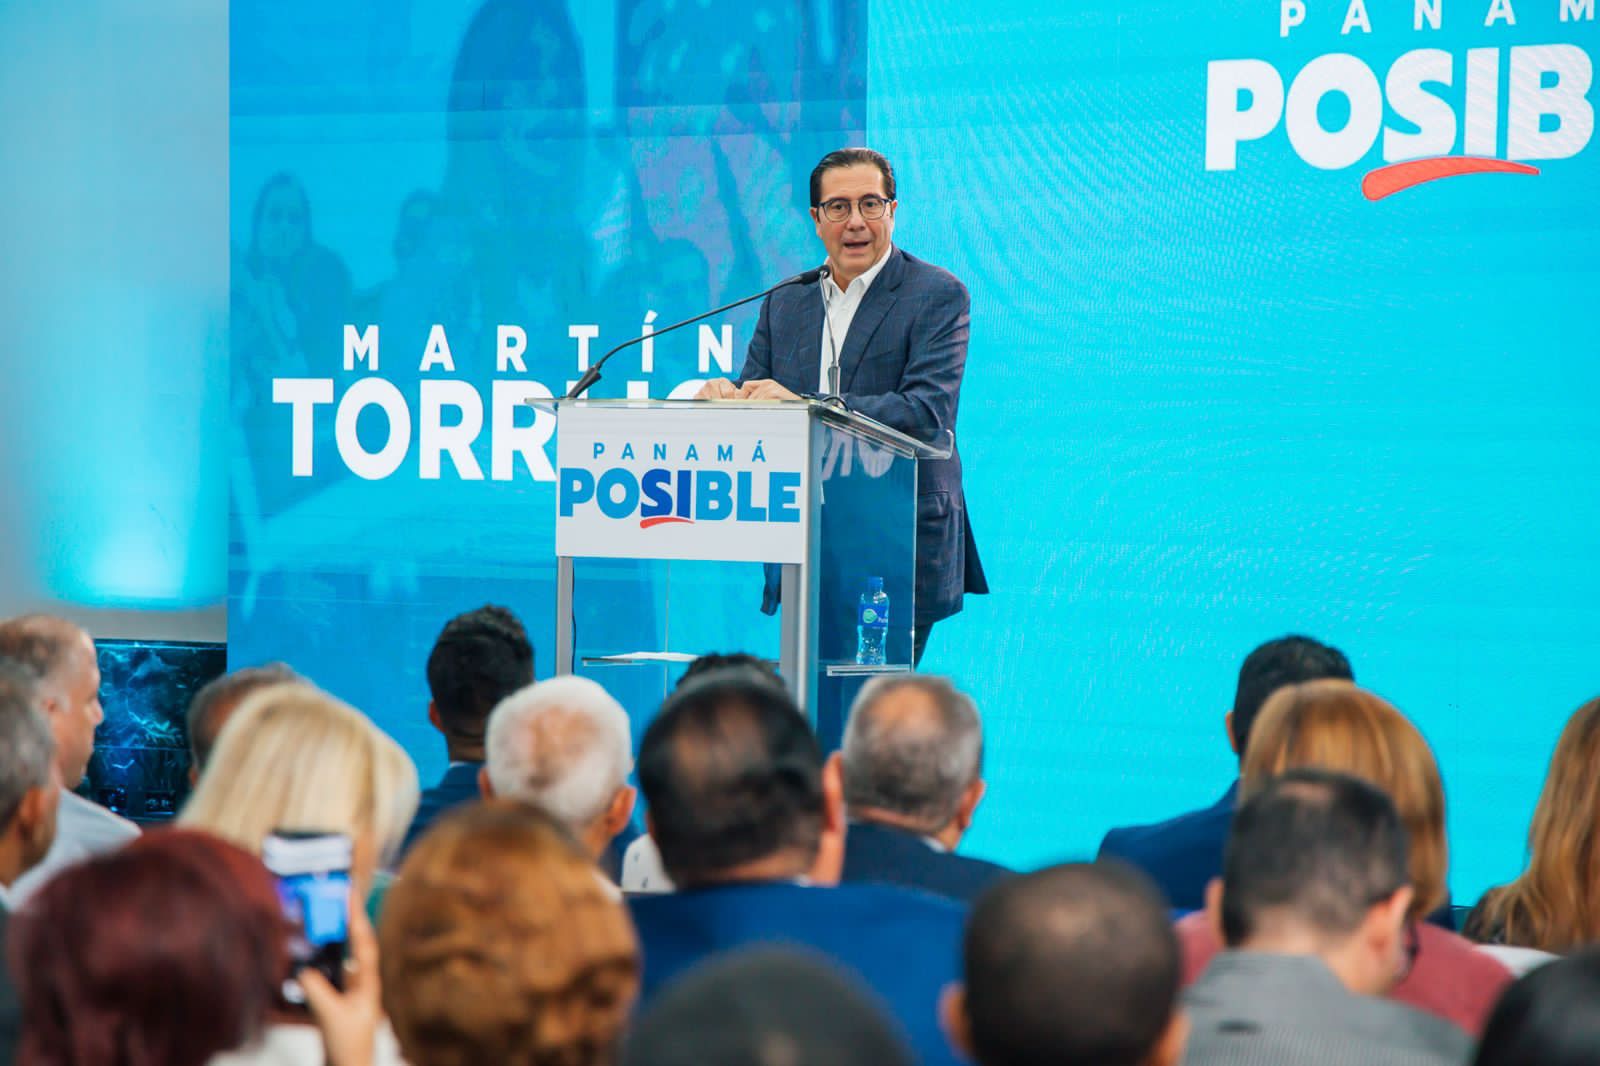 El gobierno actual deja un legado de “clientelismo y la corrupción", afirma Martín